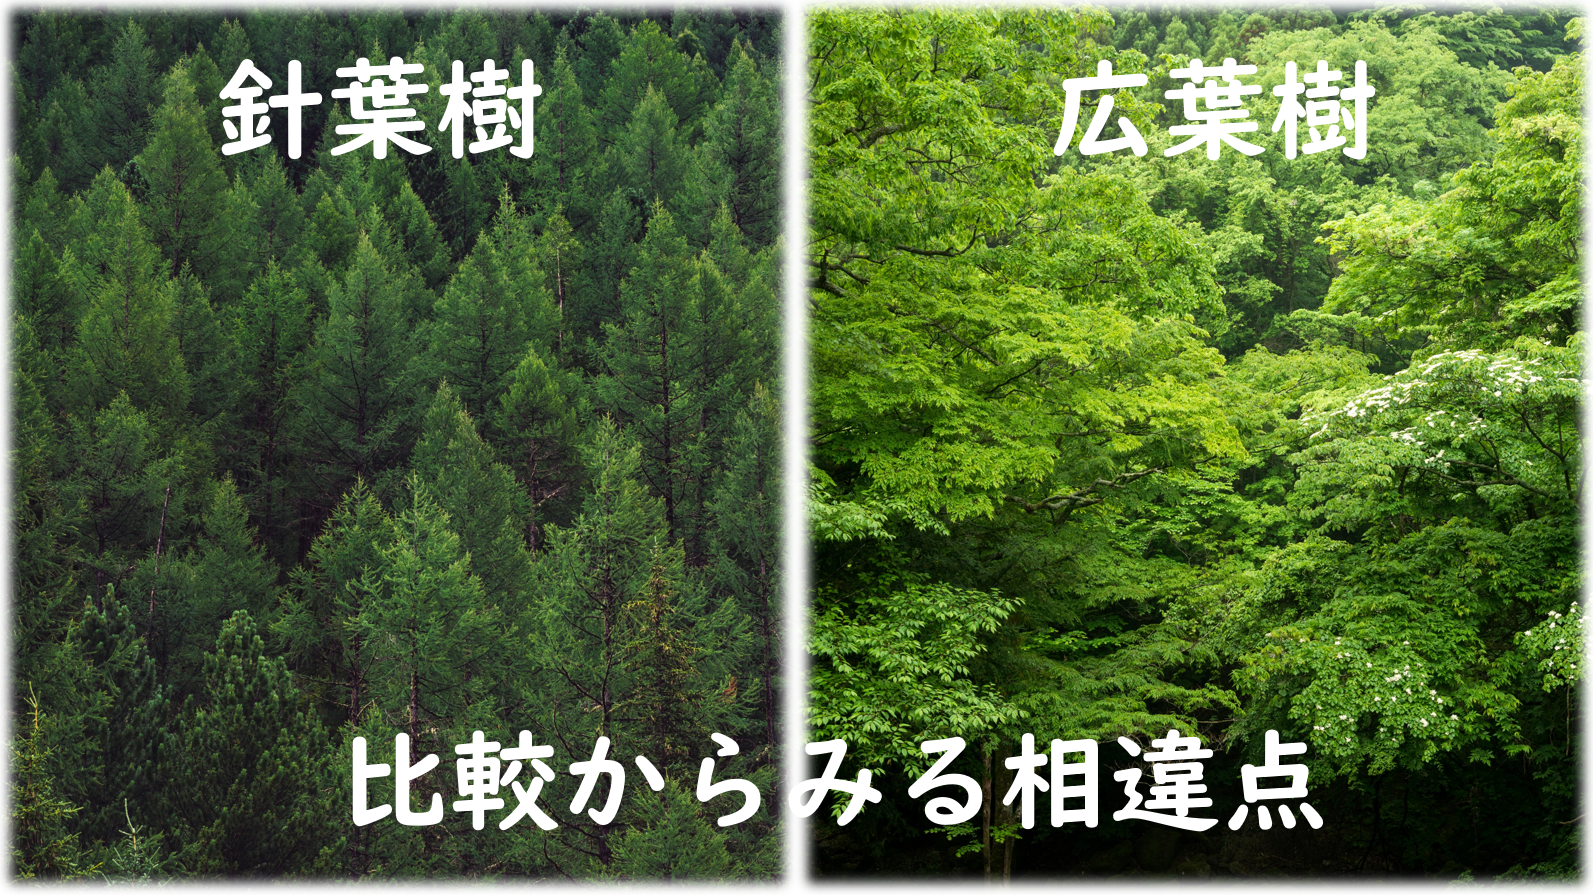 針葉樹と広葉樹の比較からみる相違点 Toshu